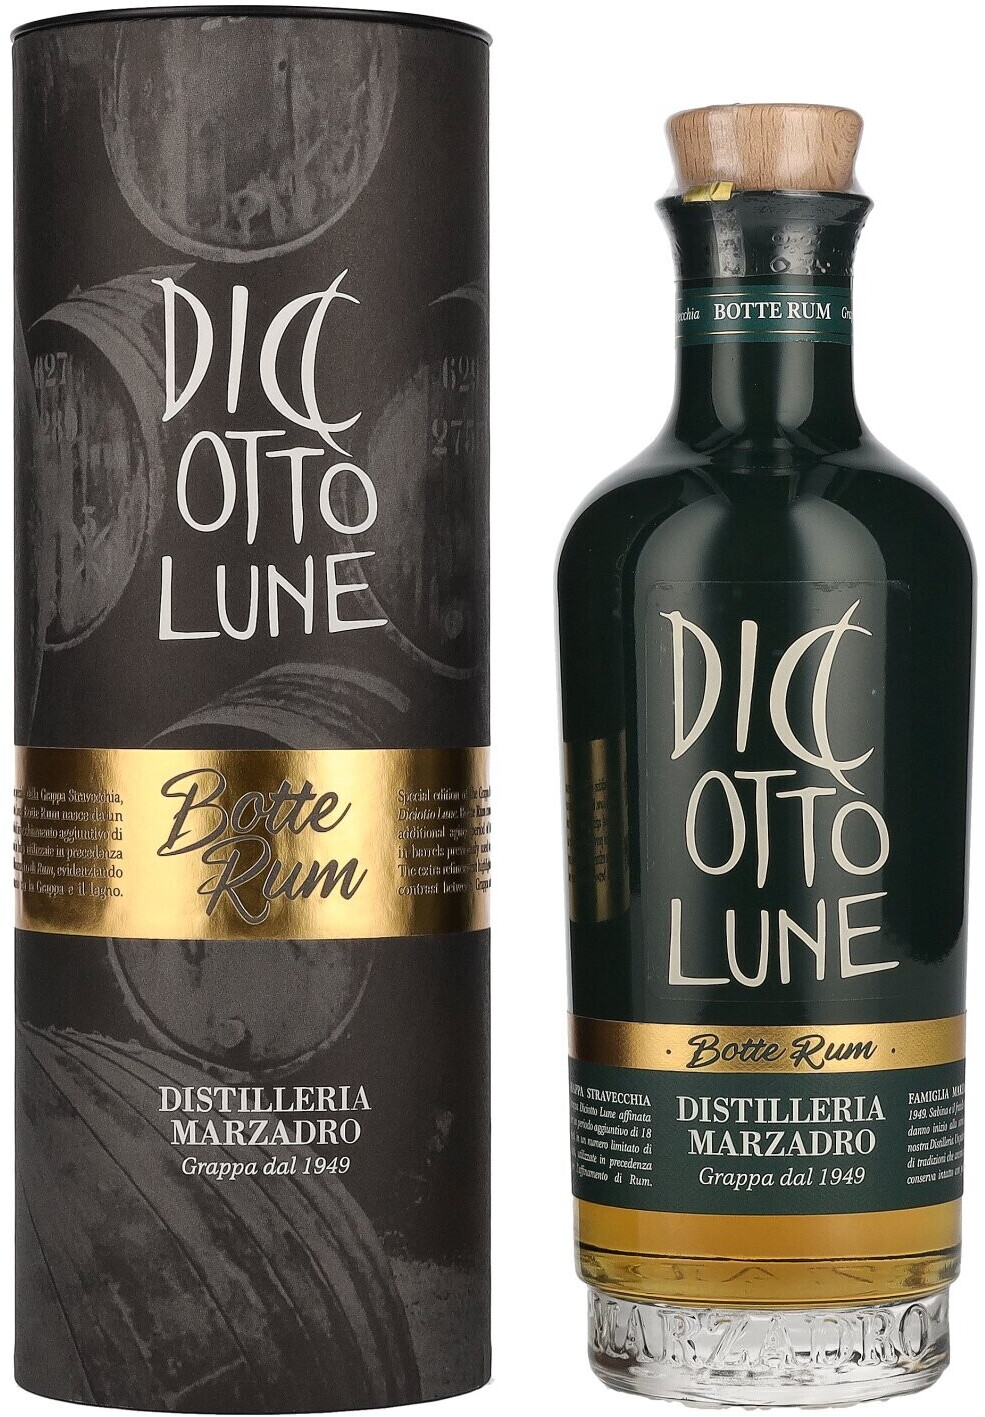 Marzadro Diciotto Lune Botte Rum 0,5l 42% ab € 26,90 | Preisvergleich bei | Obstbrand & Grappa